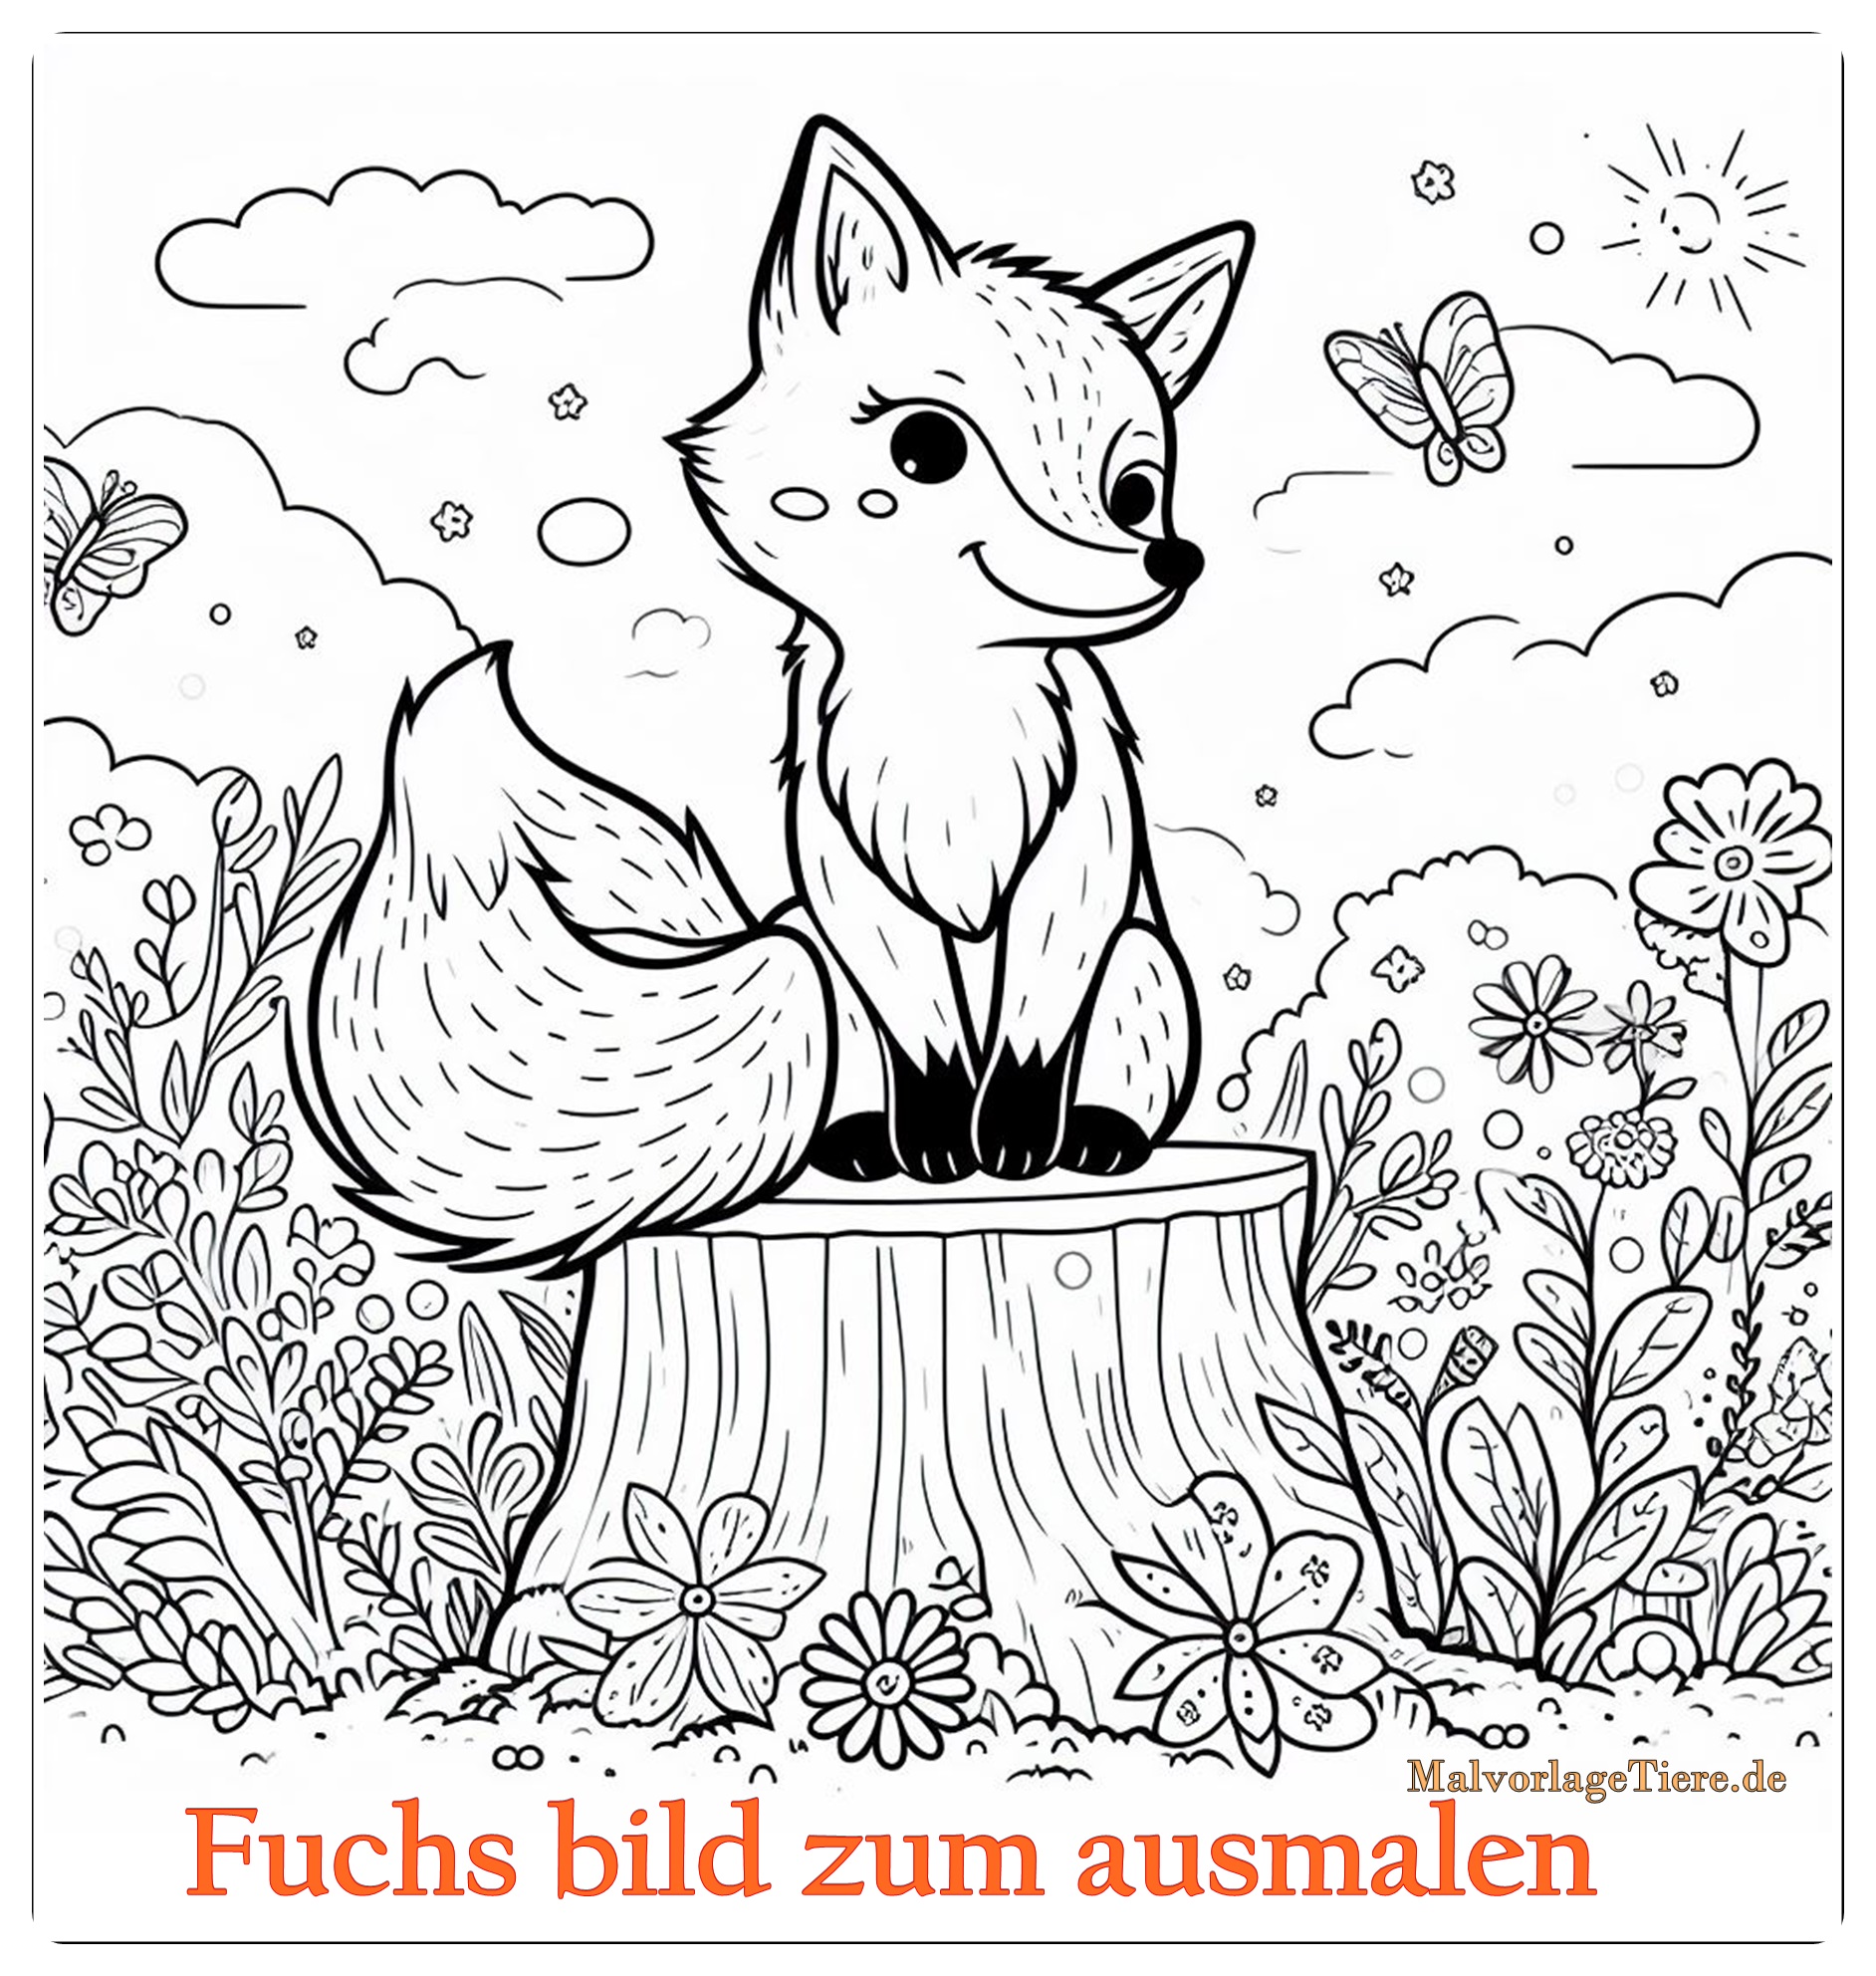 Fuchs bild zum ausmalen 04 by malvorlagetiere.de